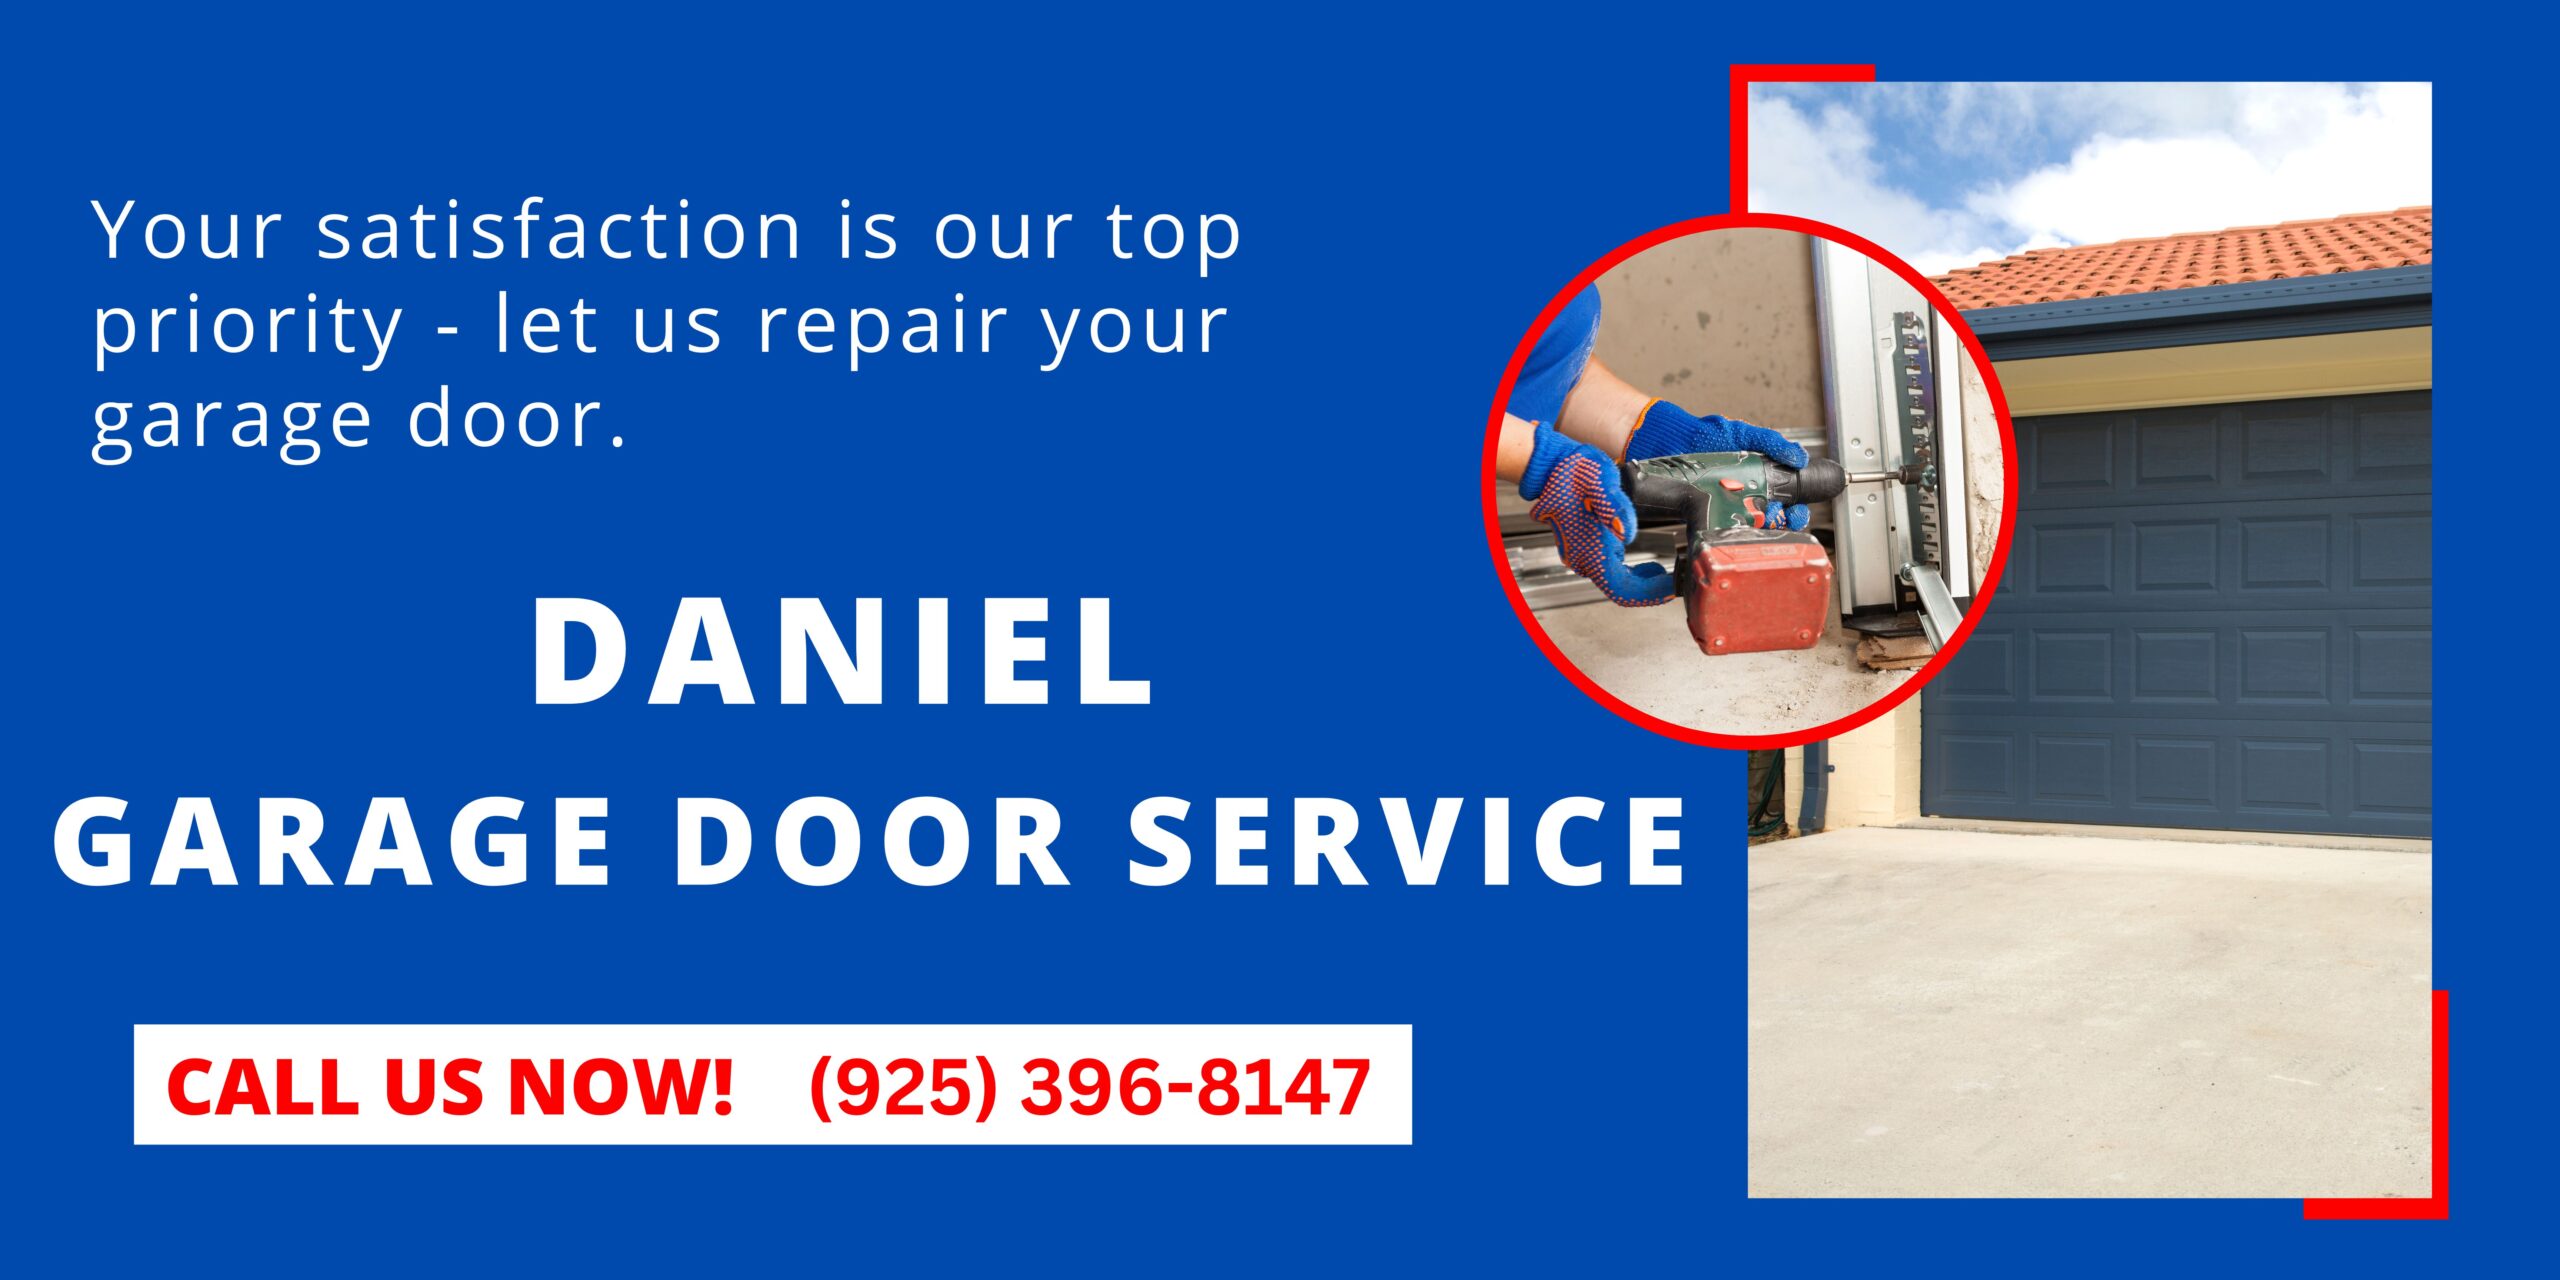 Daniel Garage Door Service